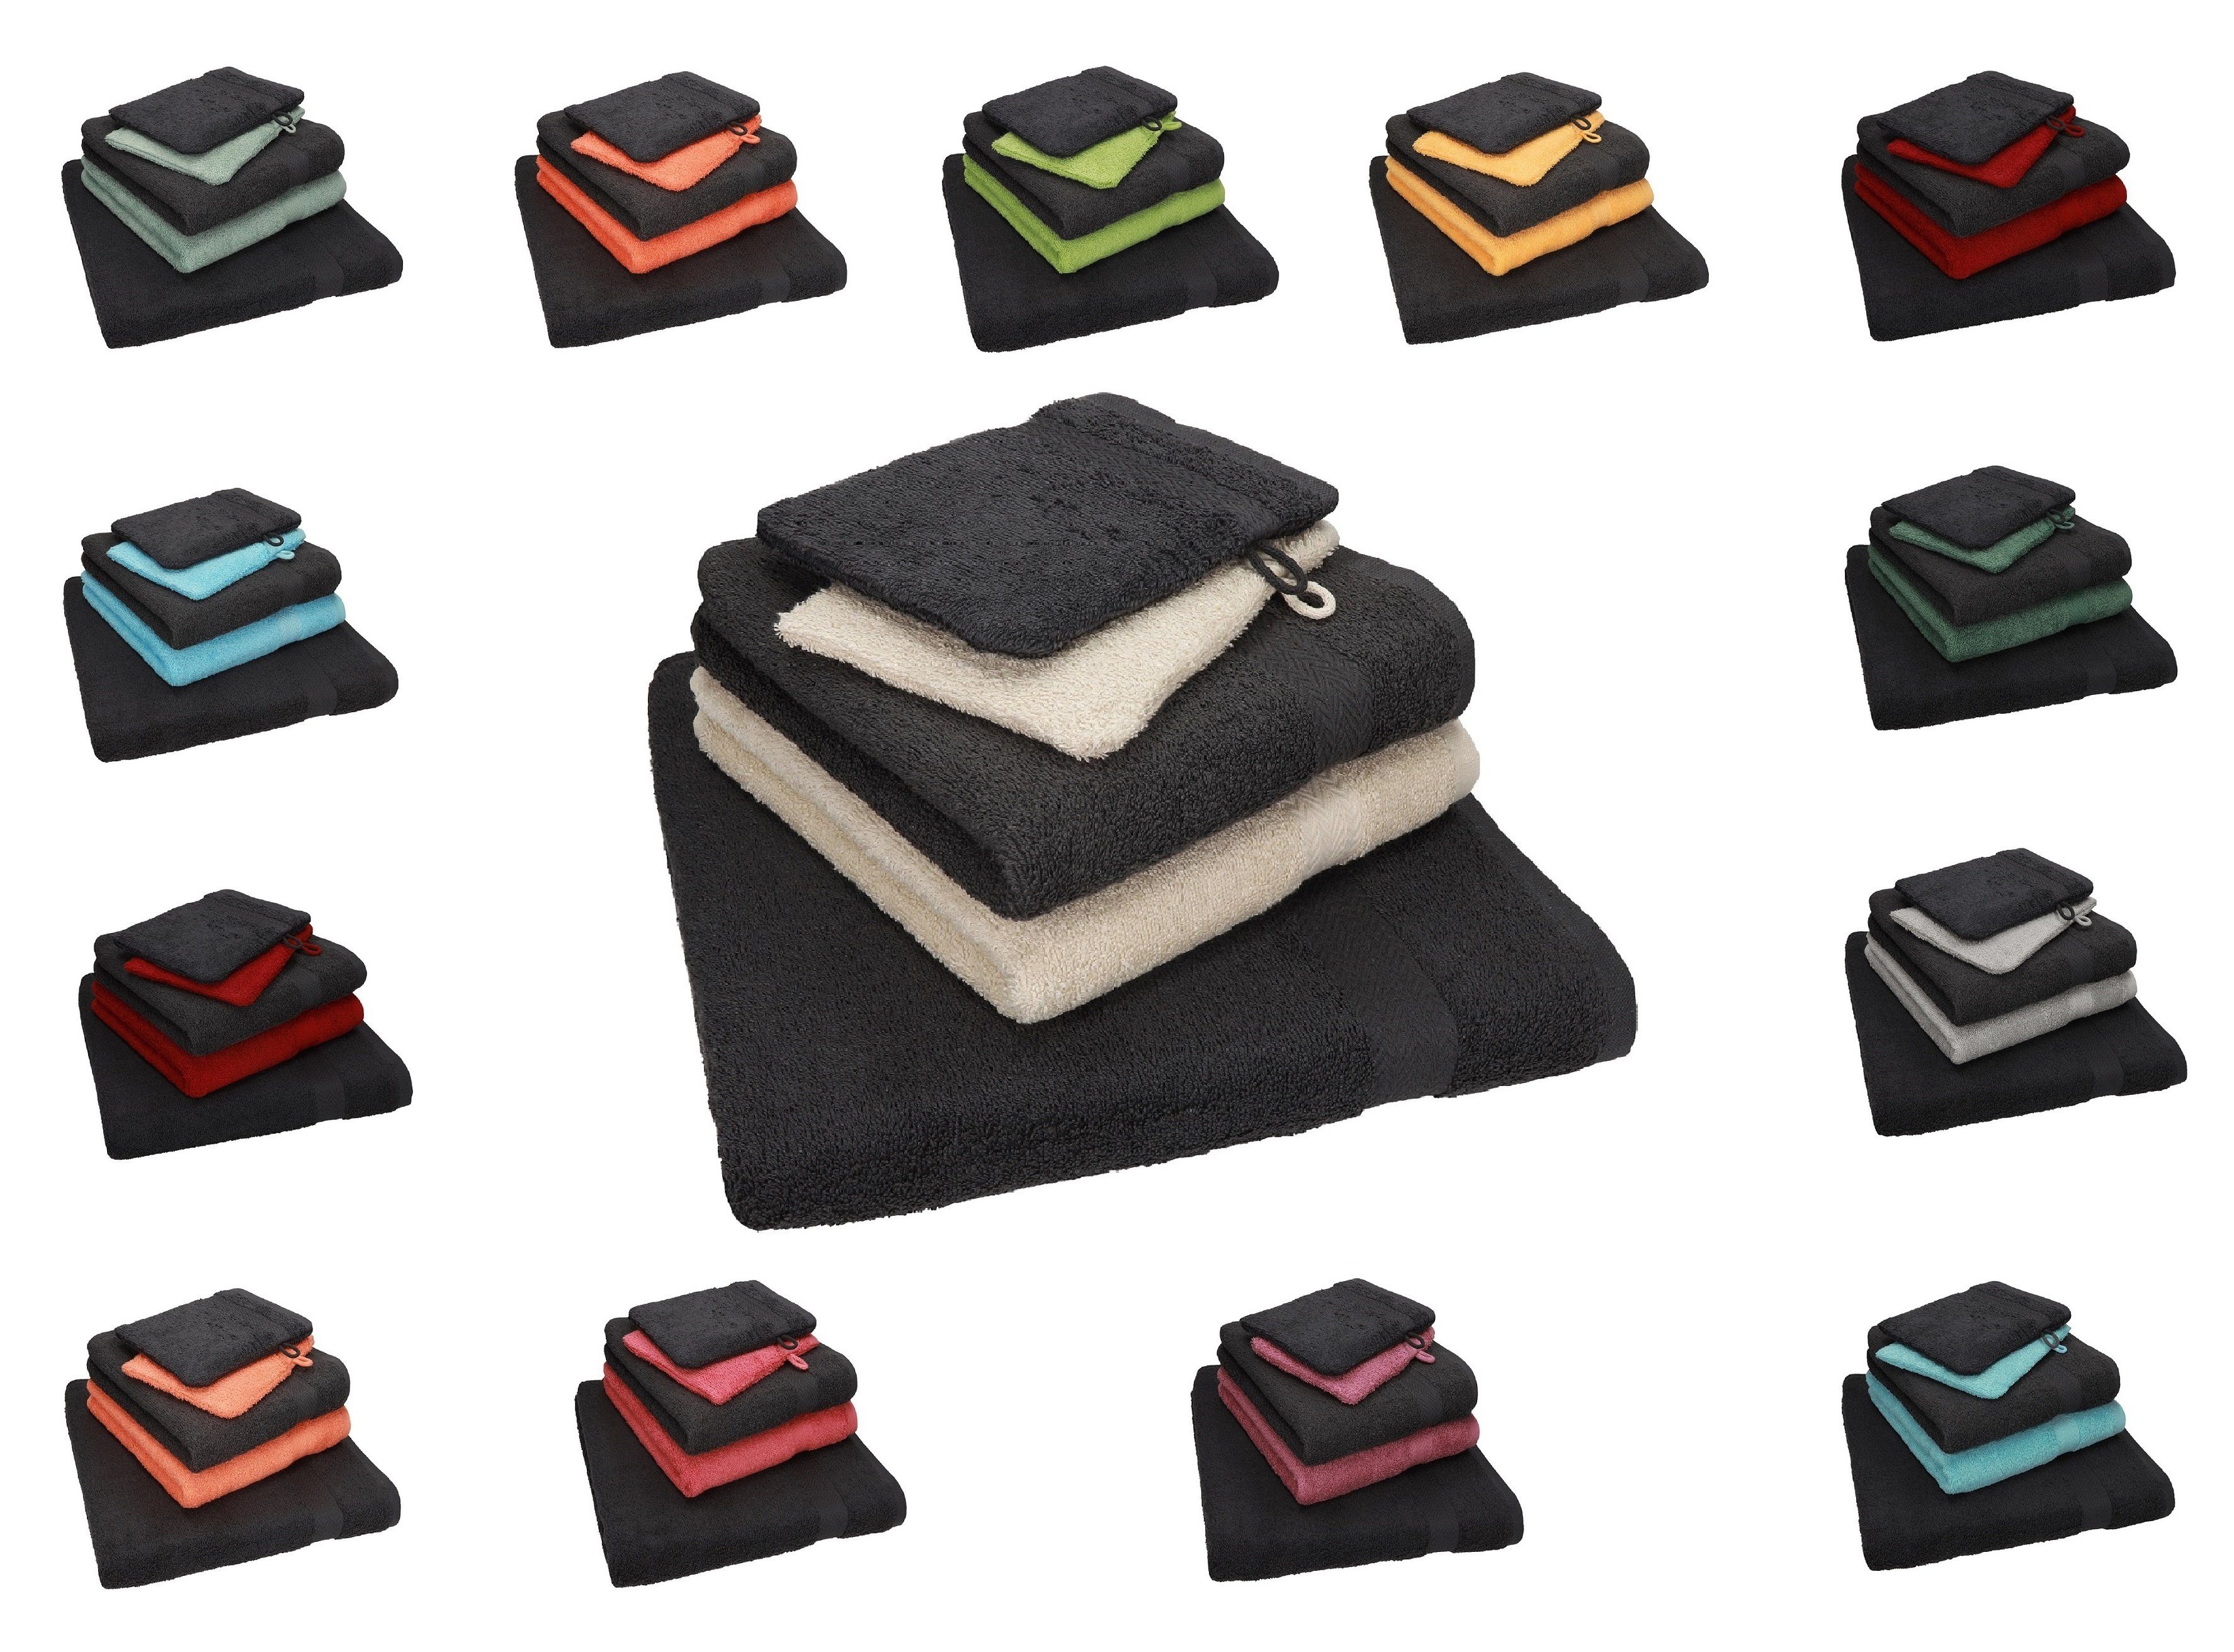 SINGLE Handtuch orange 5 1 graphit TLG. 2 Set Handtücher und PACK Set 100% Handtuch Baumwolle Waschhandschuhe, Betz 2 100% grau Baumwolle Duschtuch